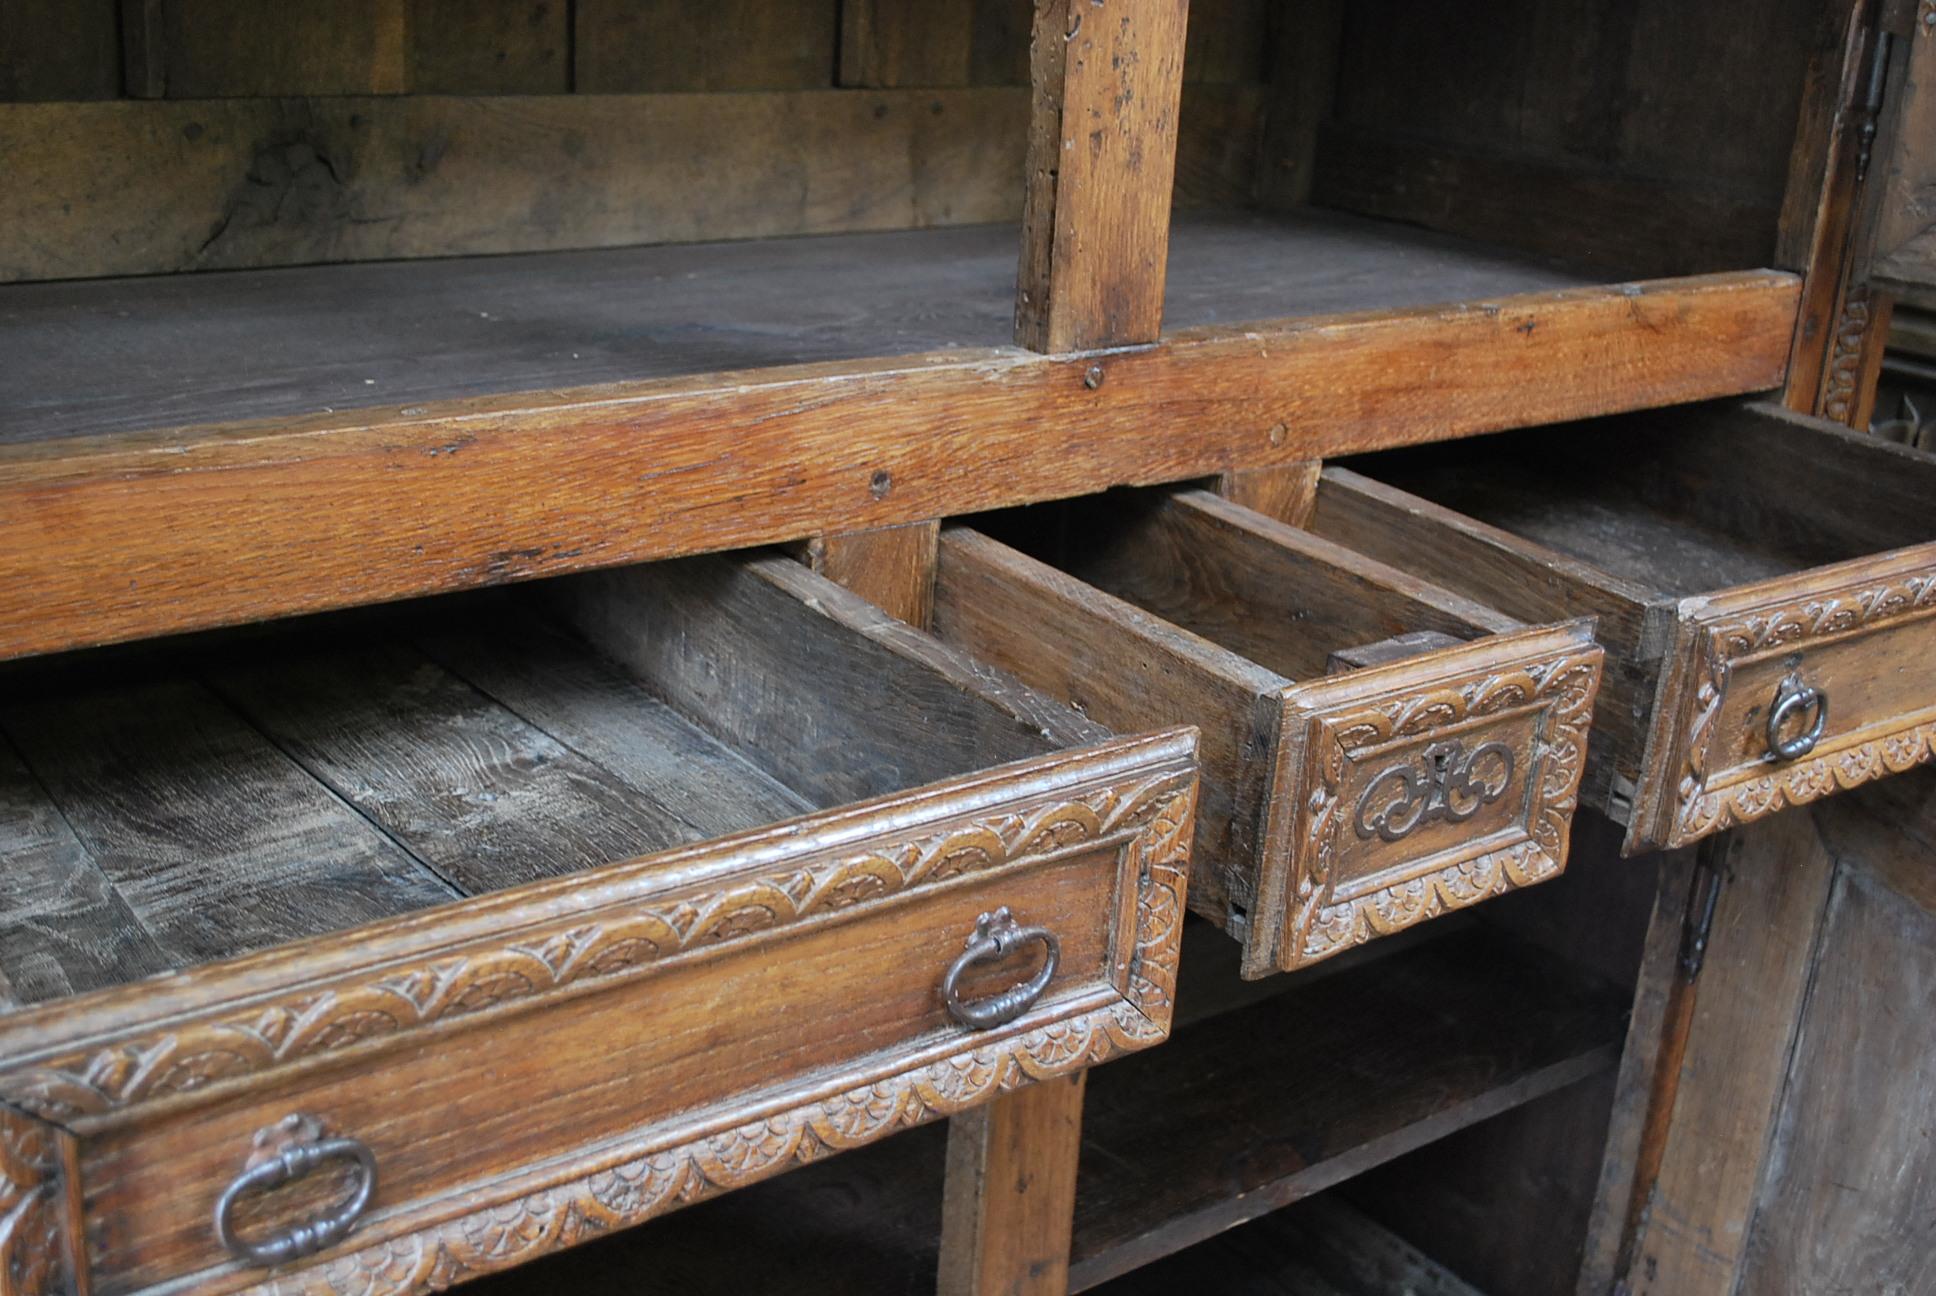 Hutton-Clarke Antiques a le plaisir de présenter une exquise armoire de gouvernante française ancienne, datant du début des années 1700. Cette pièce arbore une étonnante teinte blonde naturelle qui rayonne de chaleur et de caractère. Son design met